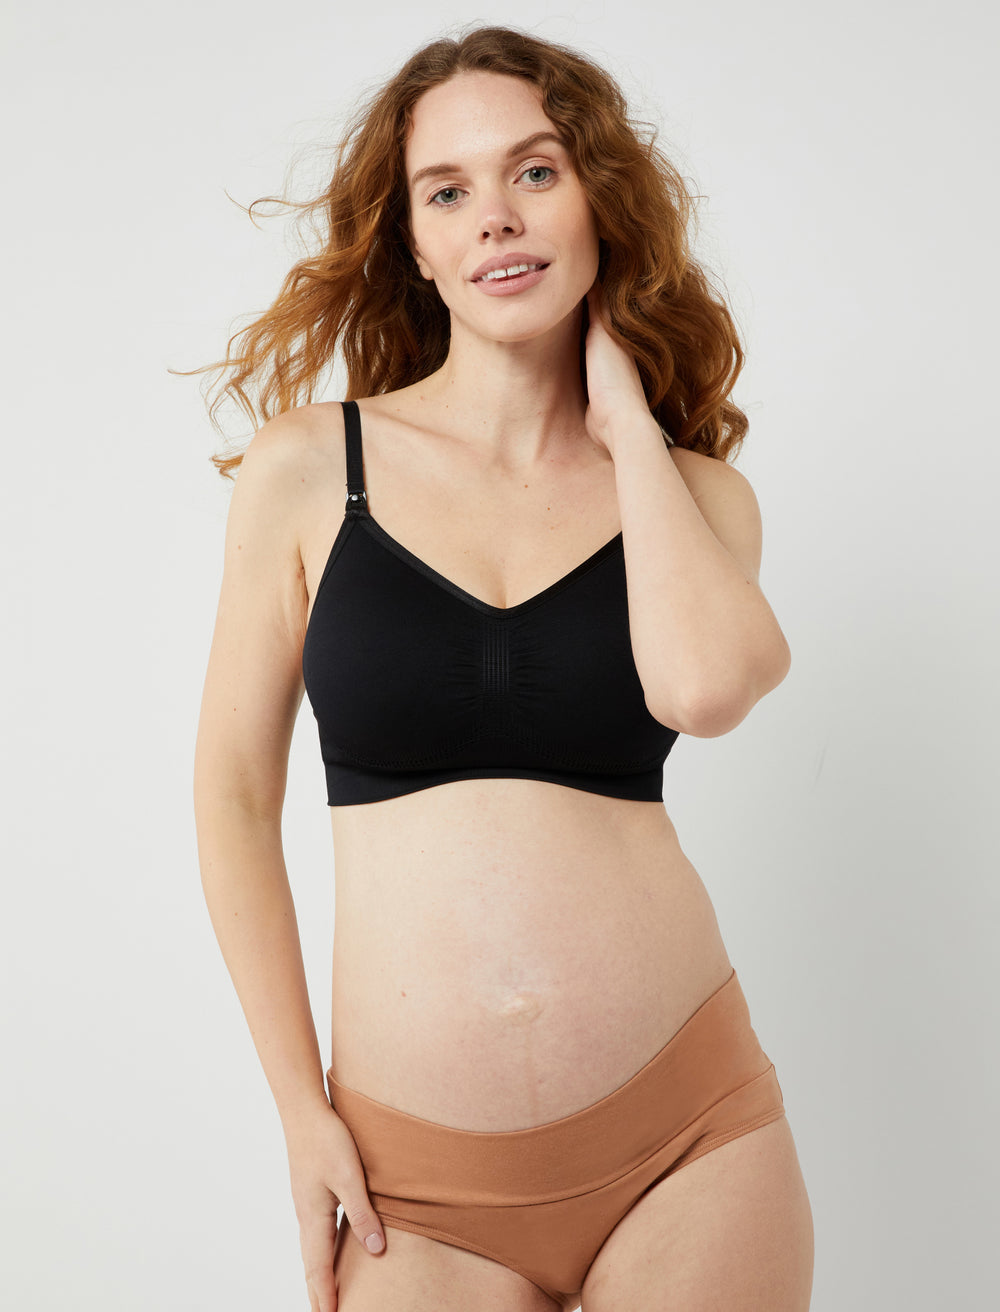 Underwear for pregnancy and nursing